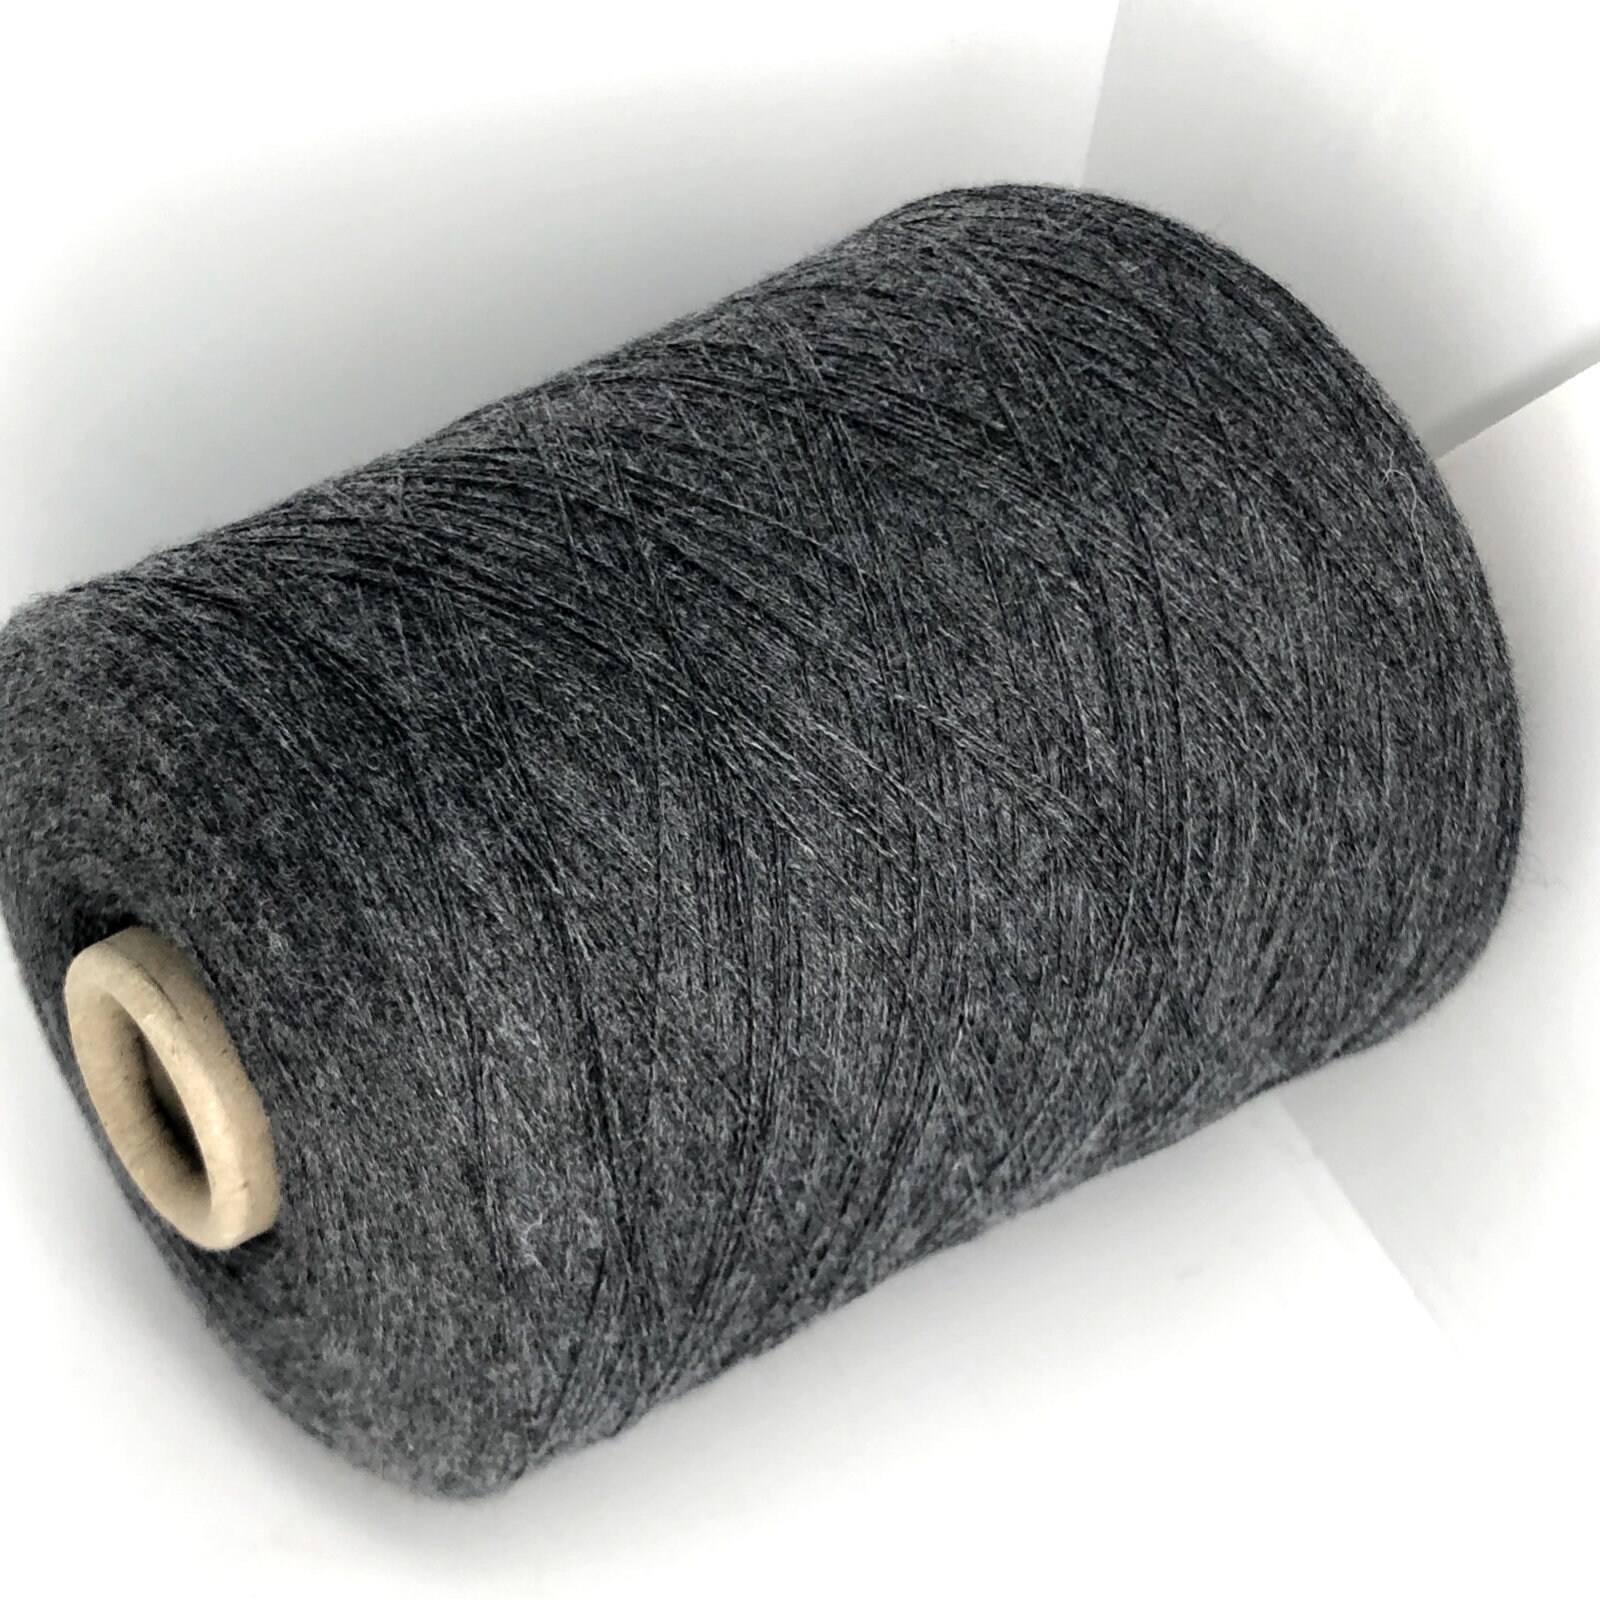 New Electric Yarn Winder / Yarn Tool / Wool Yarn, Acrylic Yarn